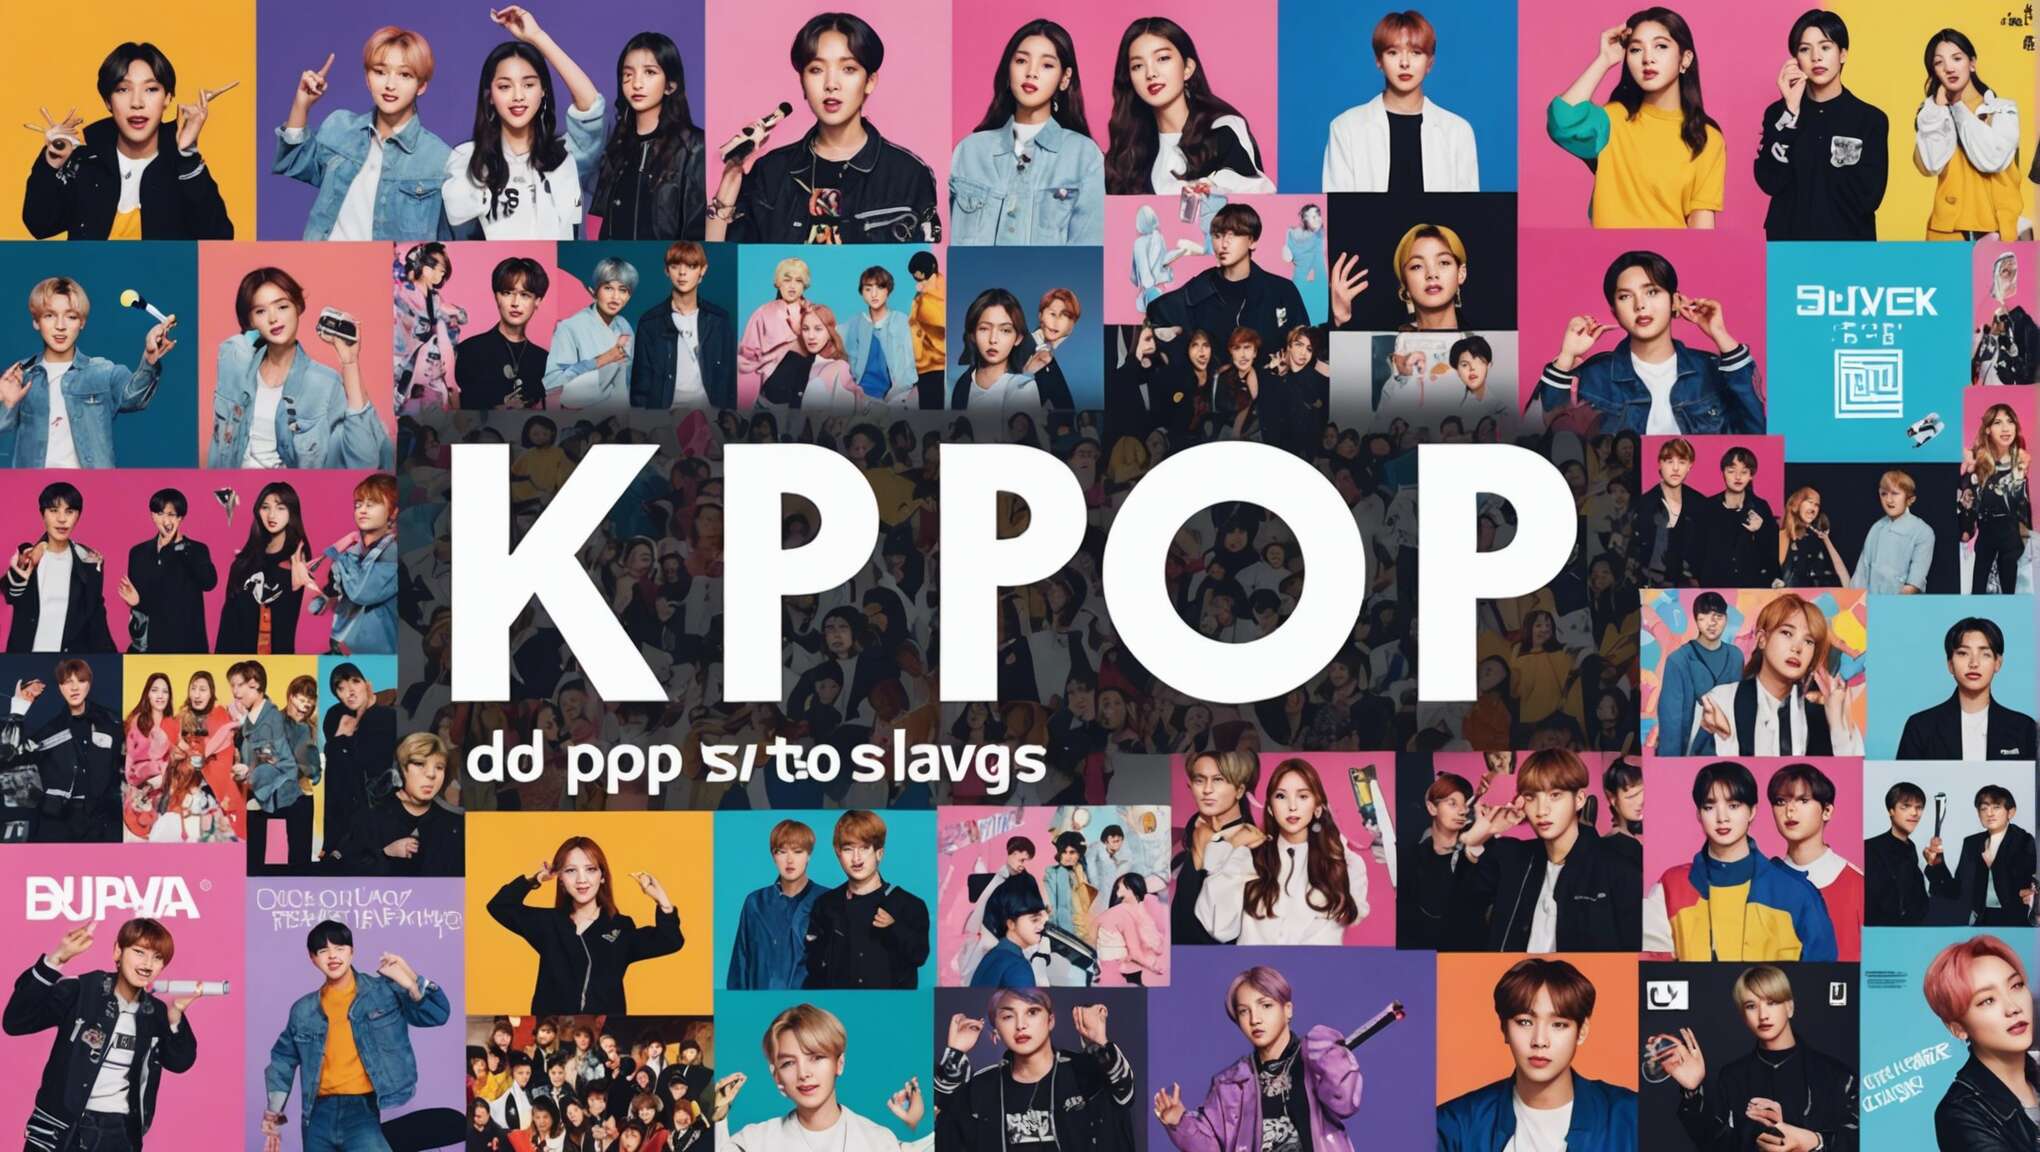 Critique éclairée : les ouvrages incontournables sur la culture K-pop